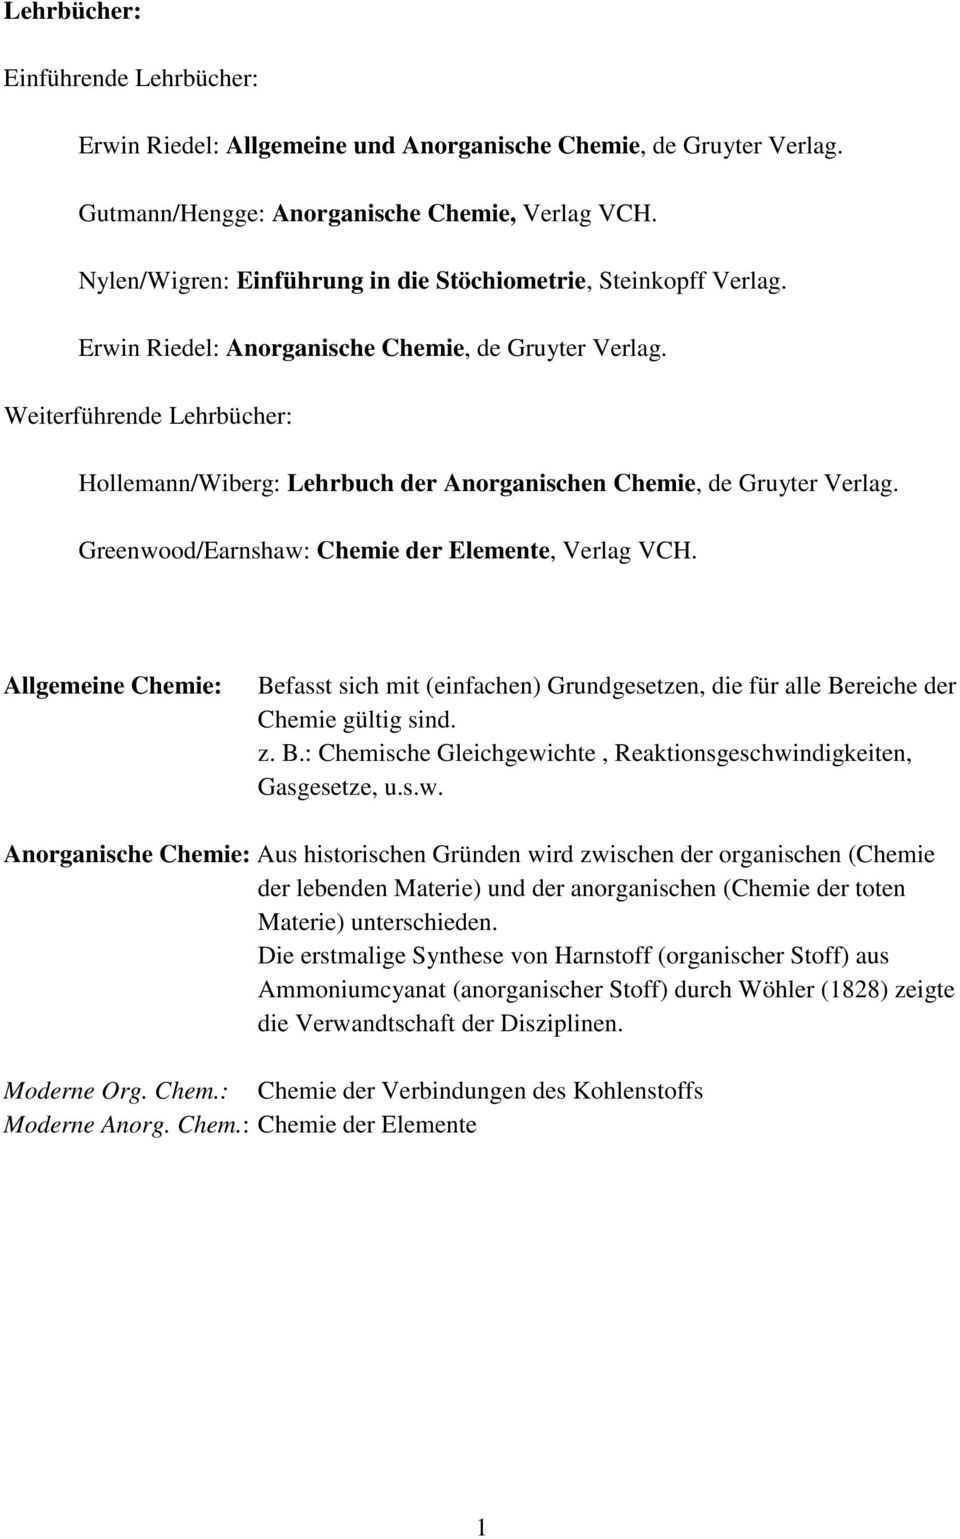 Weiterführende Lehrbücher: Hollemann/Wiberg: Lehrbuch der Anorganischen Chemie, de Gruyter Verlag. Greenwood/Earnshaw: Chemie der Elemente, Verlag VCH.